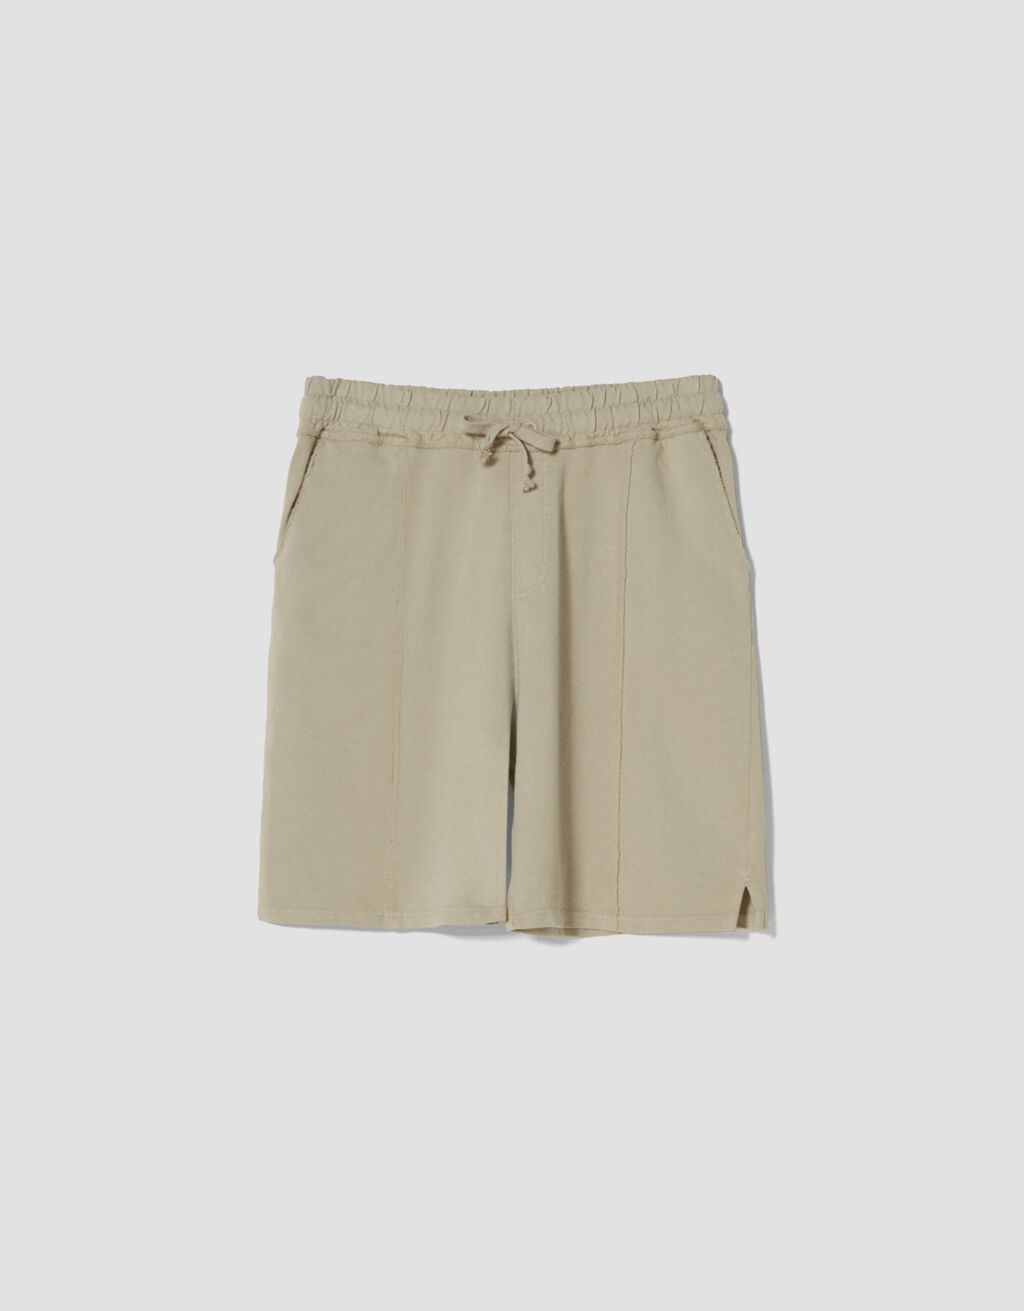 Faded plush Bermuda shorts